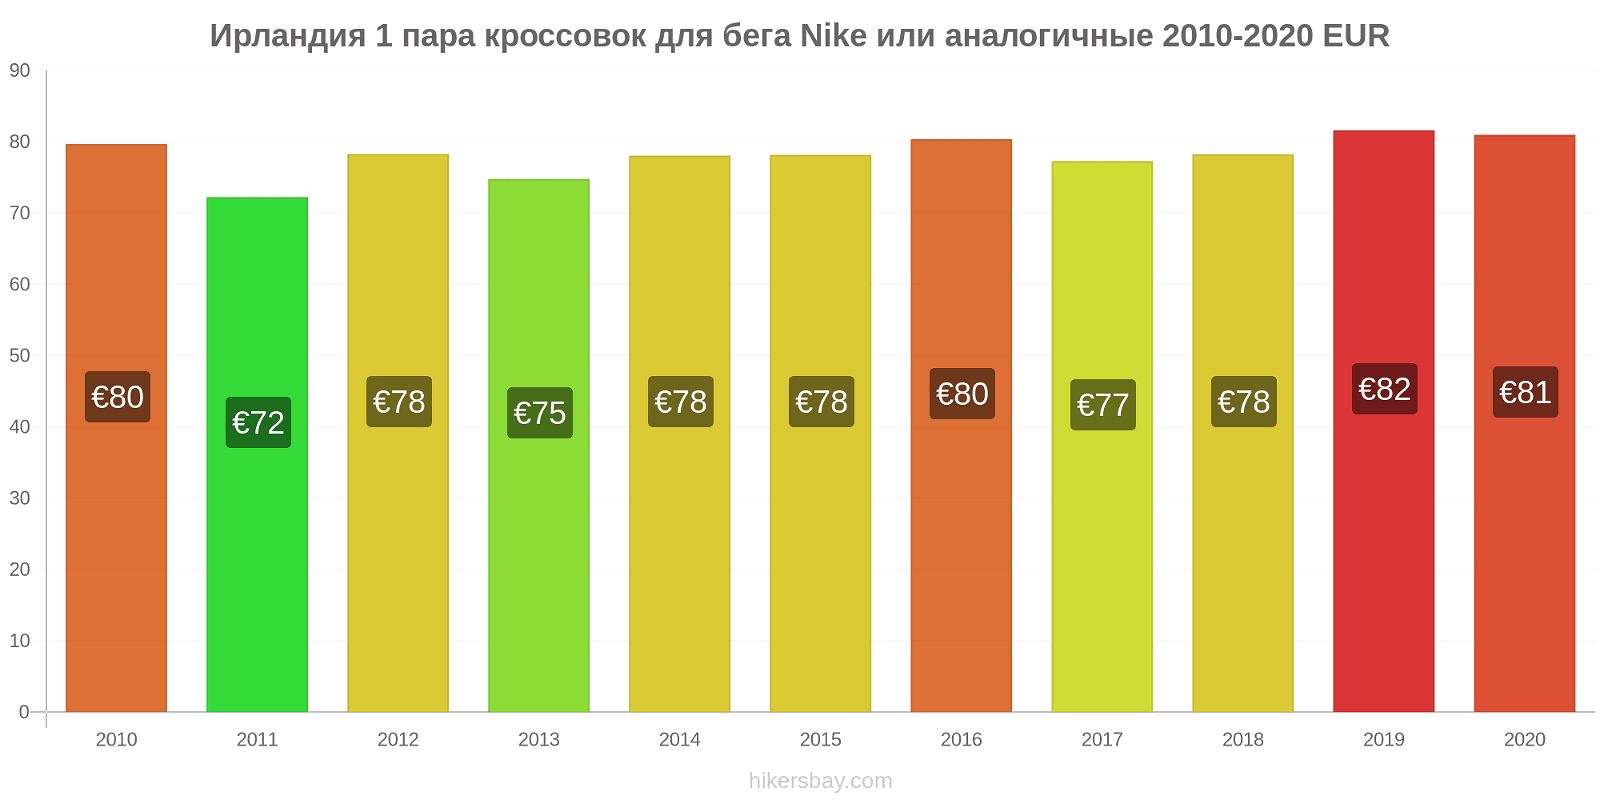 Ирландия изменения цен 1 пара кроссовок для бега Nike или аналогичные hikersbay.com